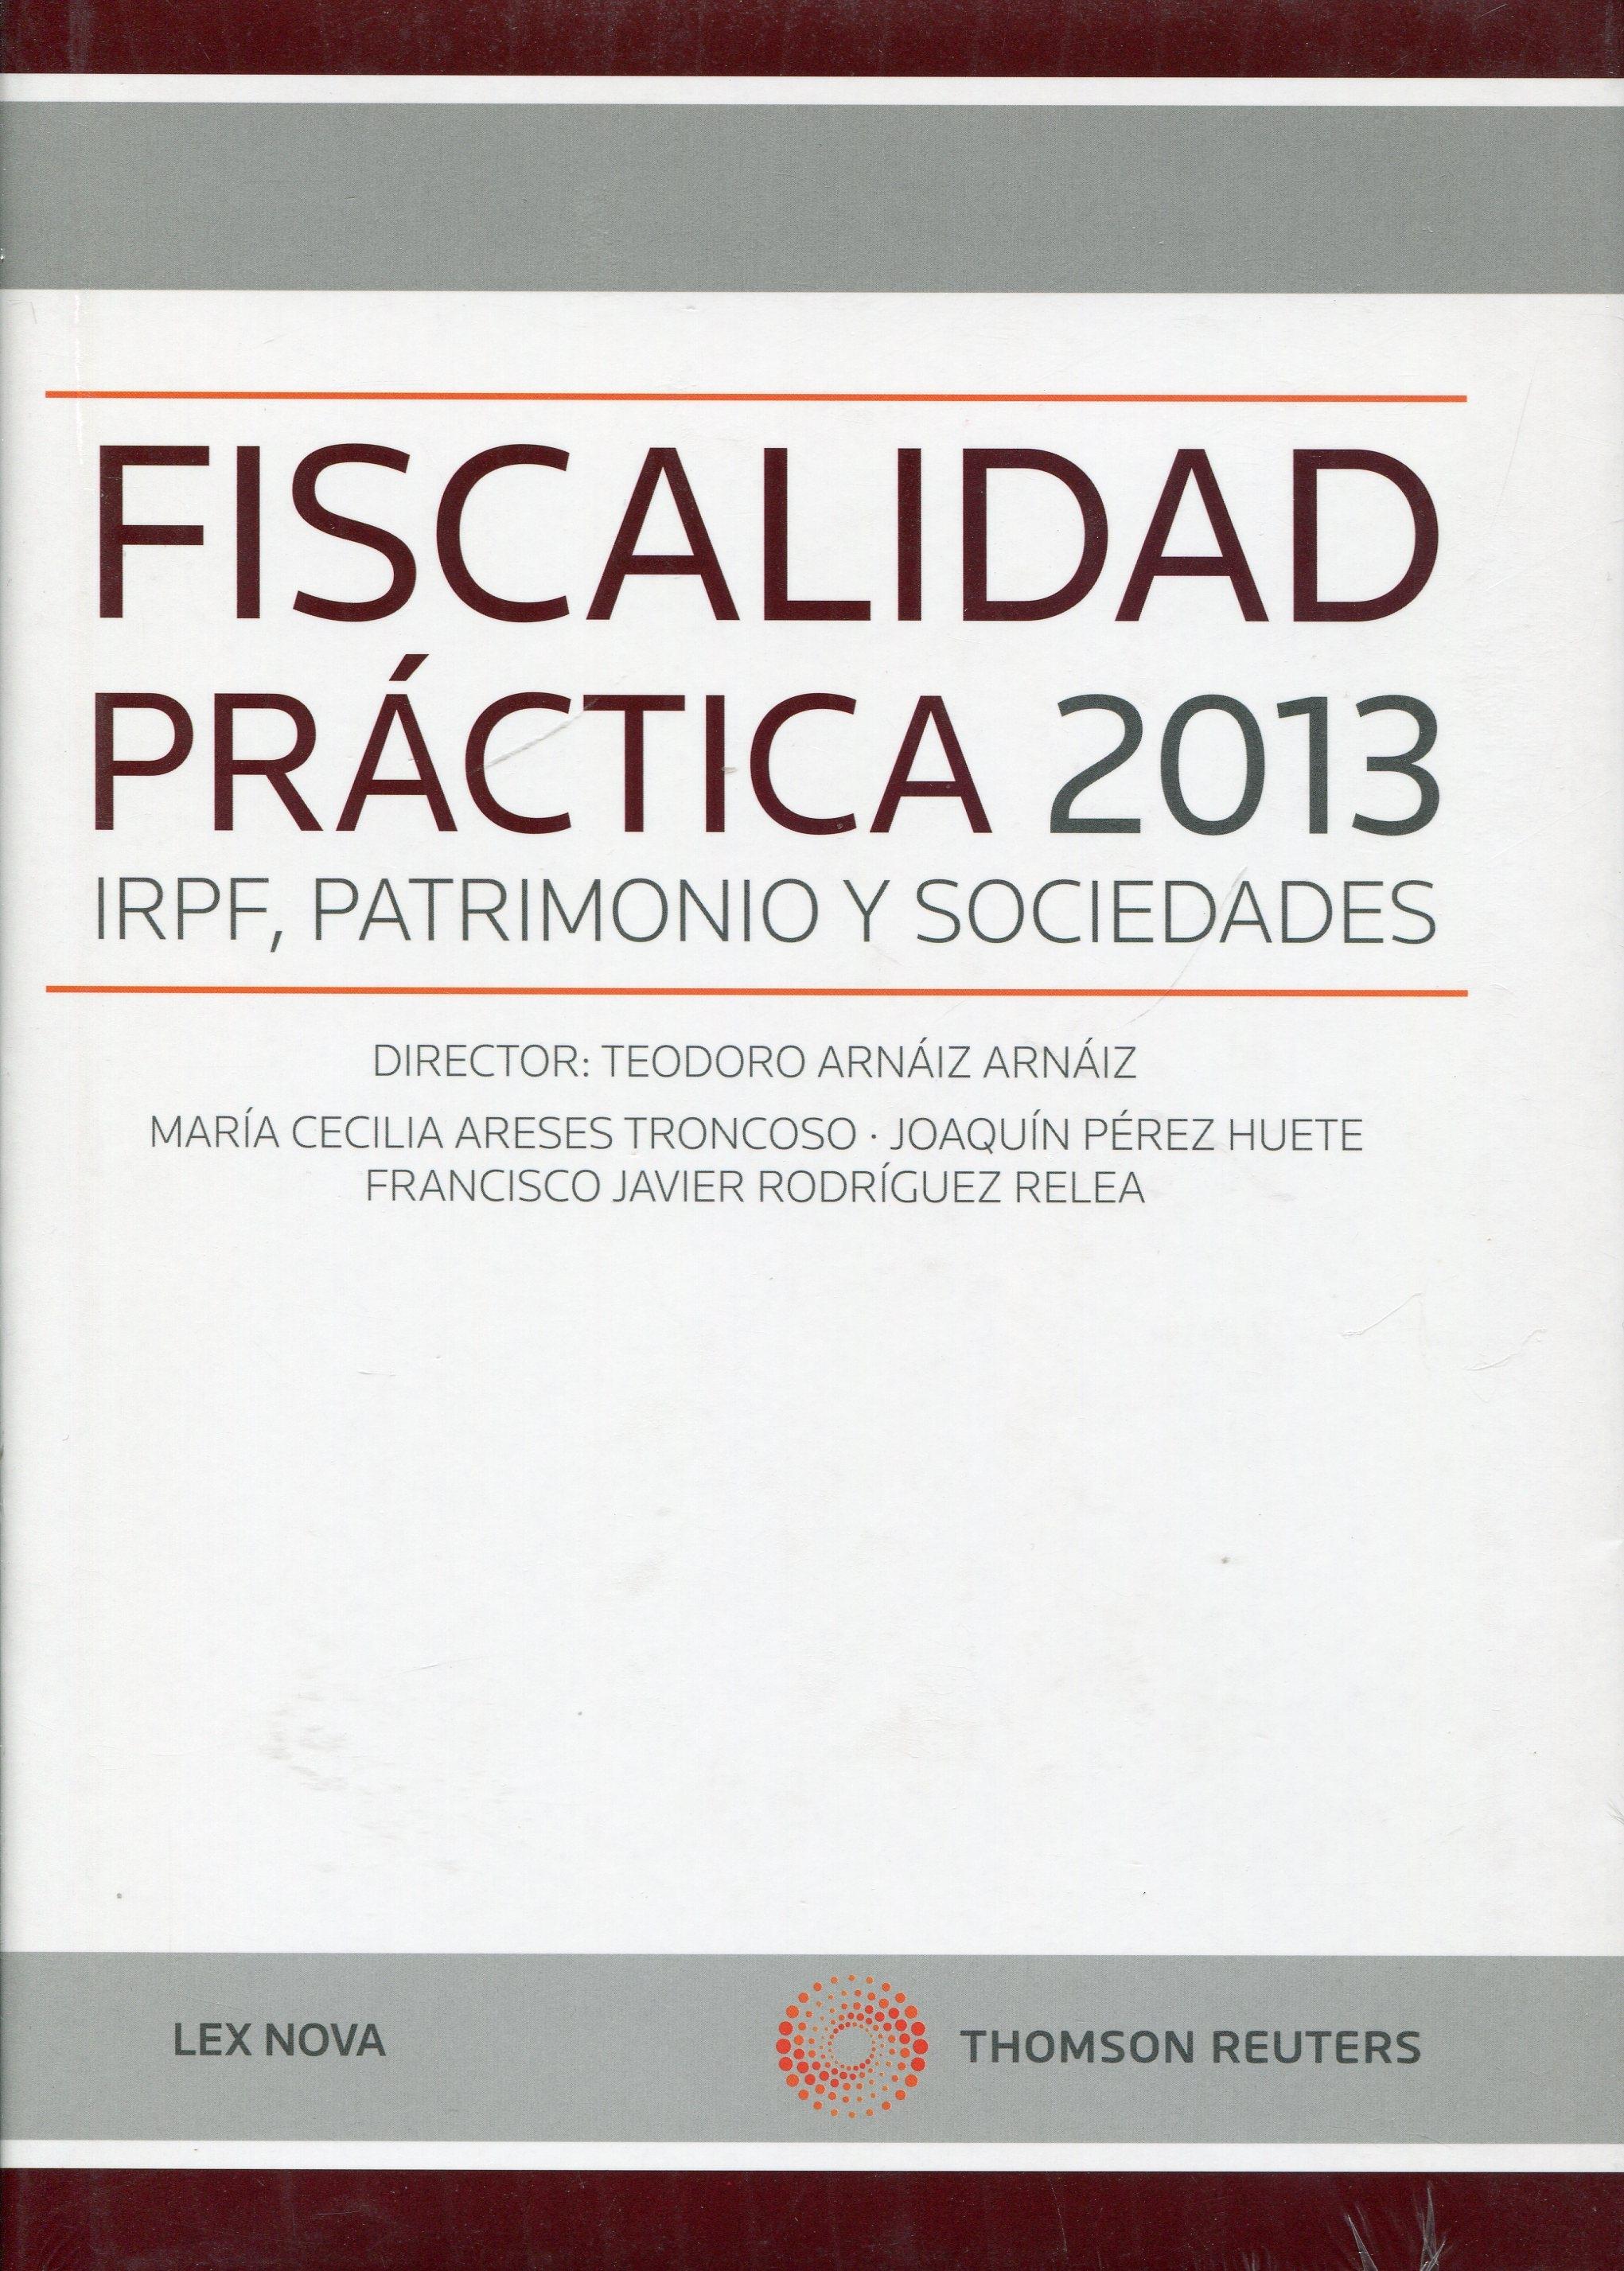 Fiscalidad práctica 2013 "IRPF, patrimonio y sociedades"